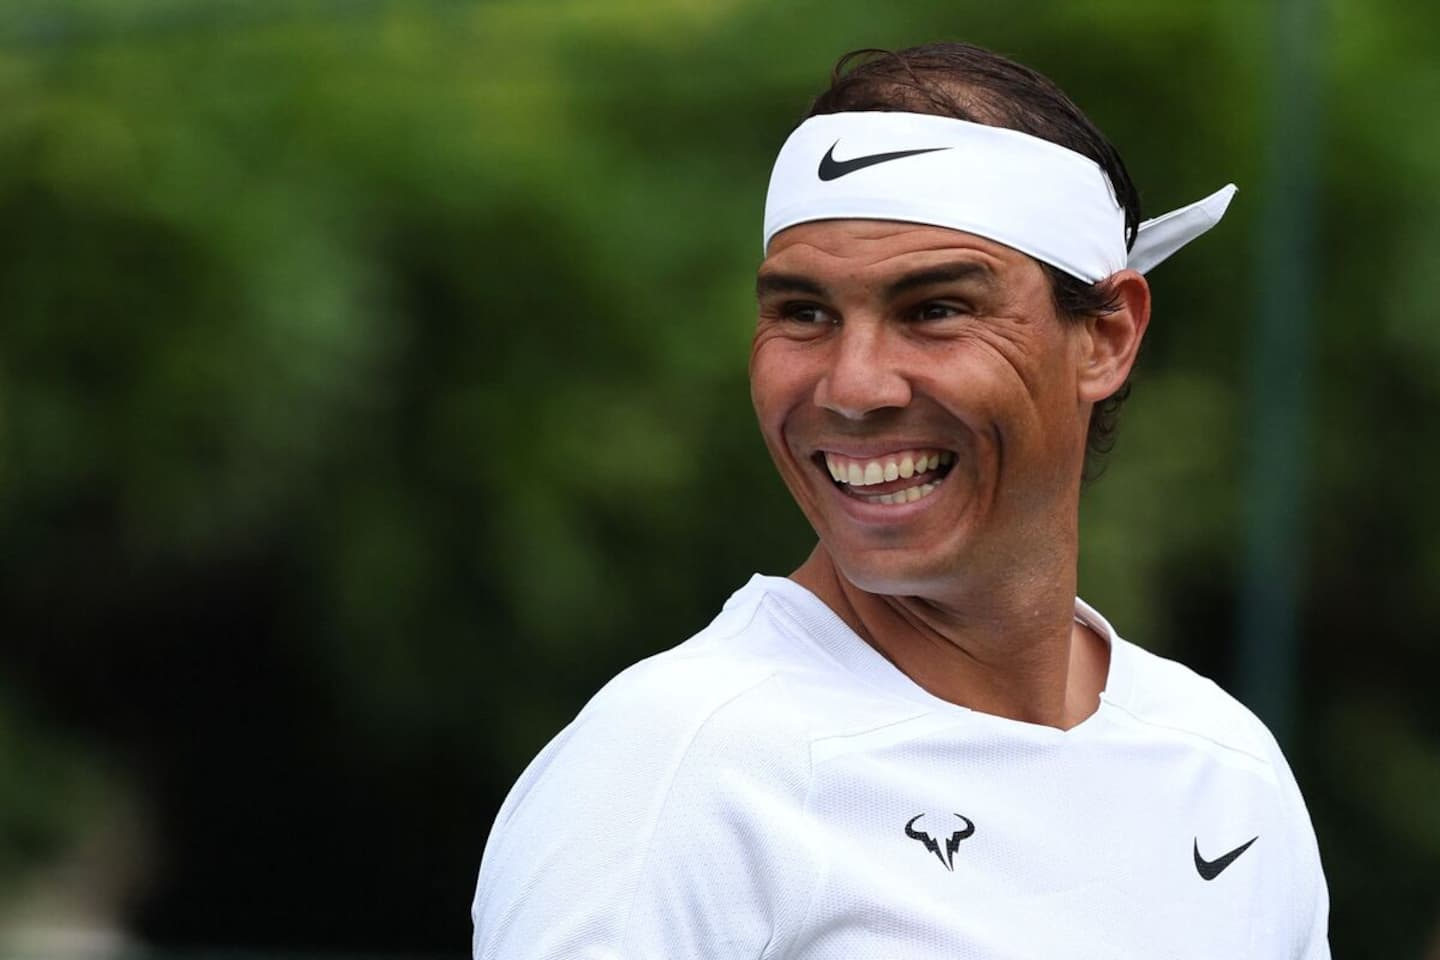 Wimbledon: Rafael Nadal is doing better